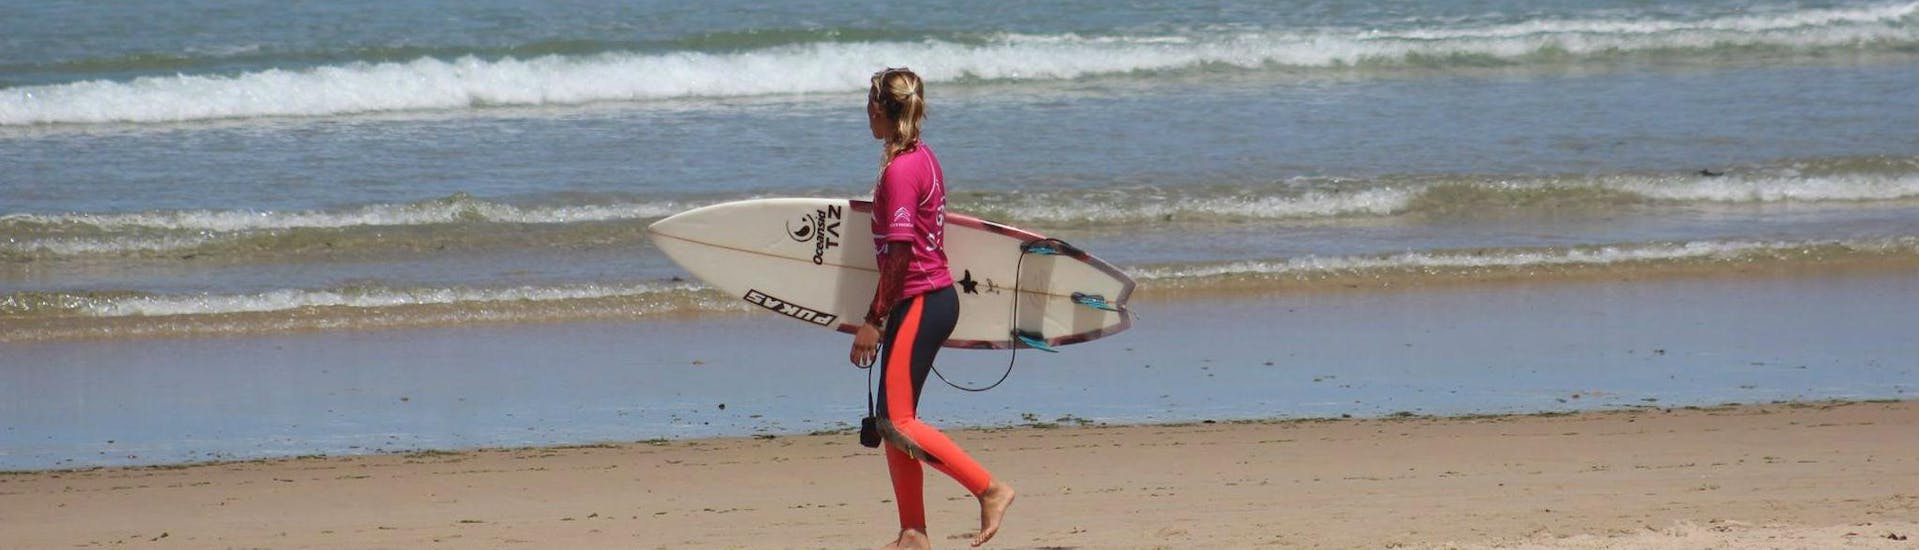 Lezioni di surf da 7 anni per surfisti avanzati.